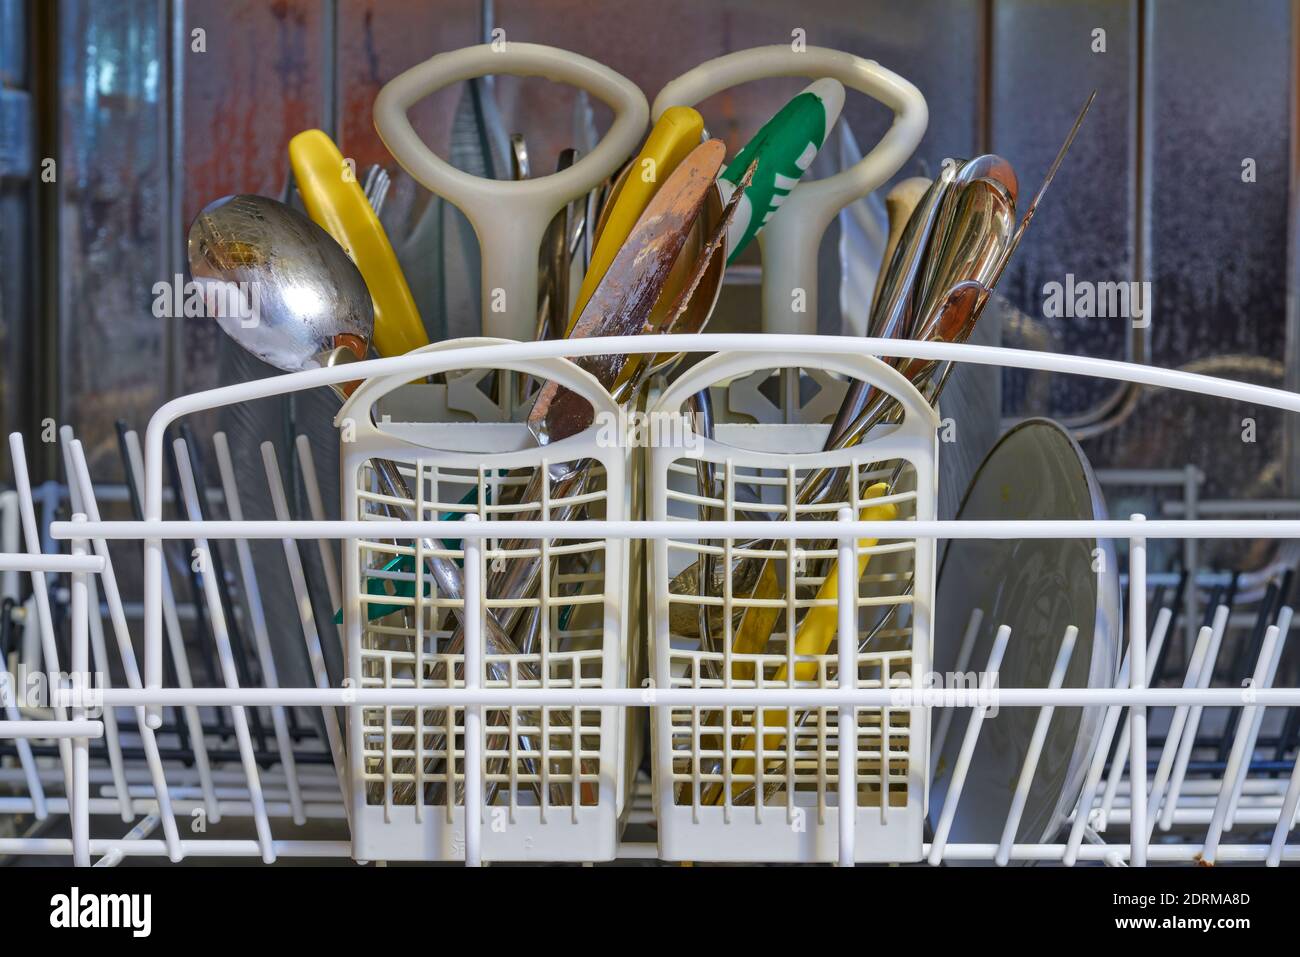 plaques, fourchettes, cuillères et couteaux sales dans un lave-vaisselle en acier inoxydable Banque D'Images